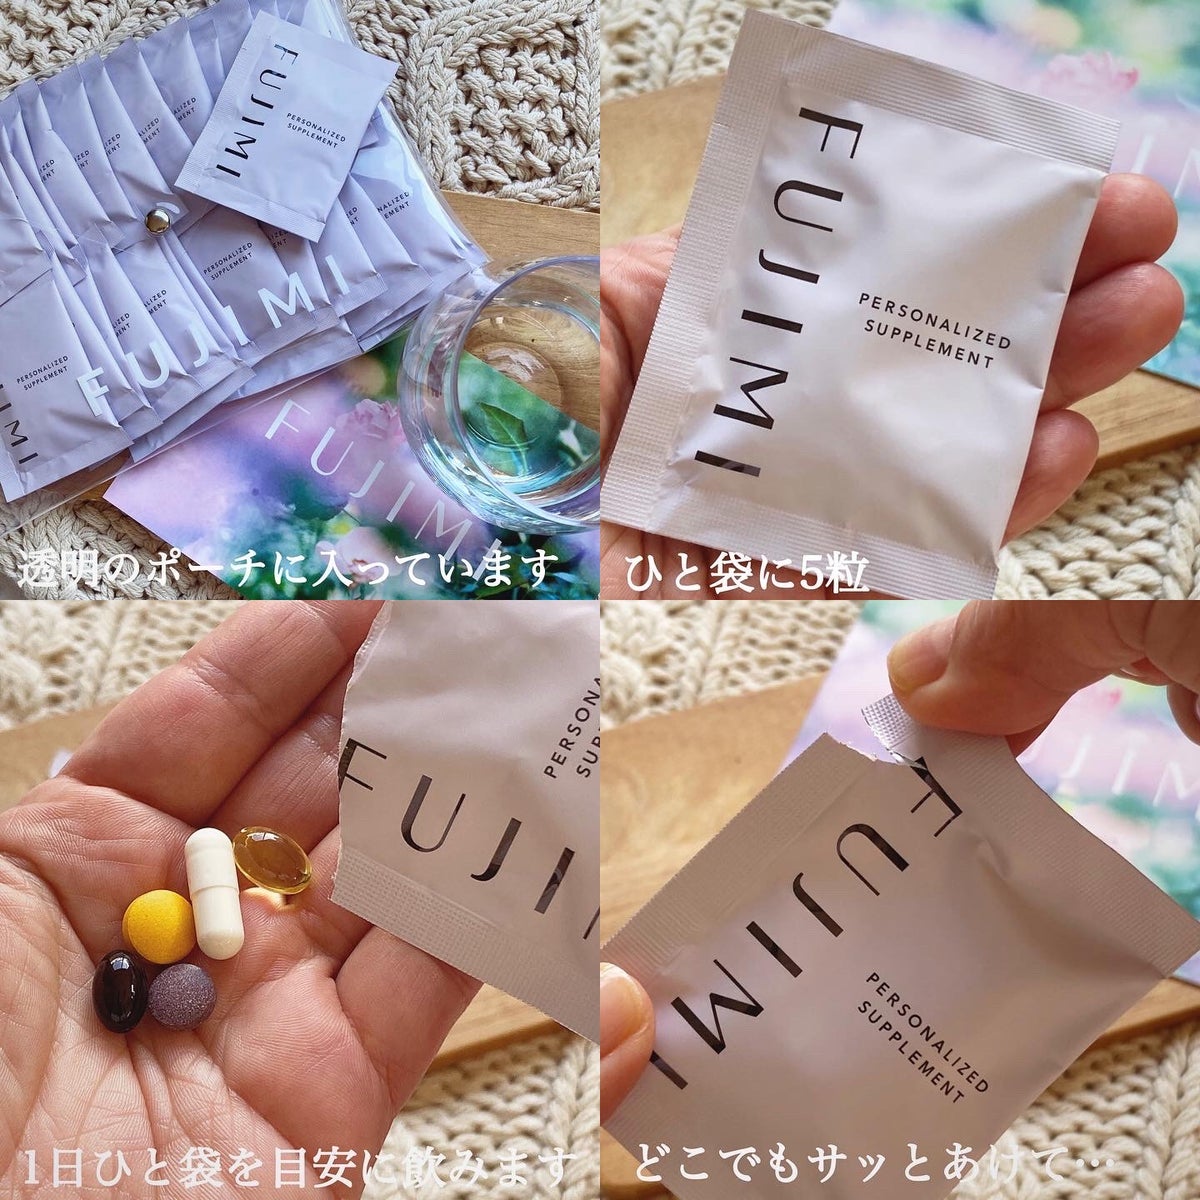 FUJIMIサプリメント2袋